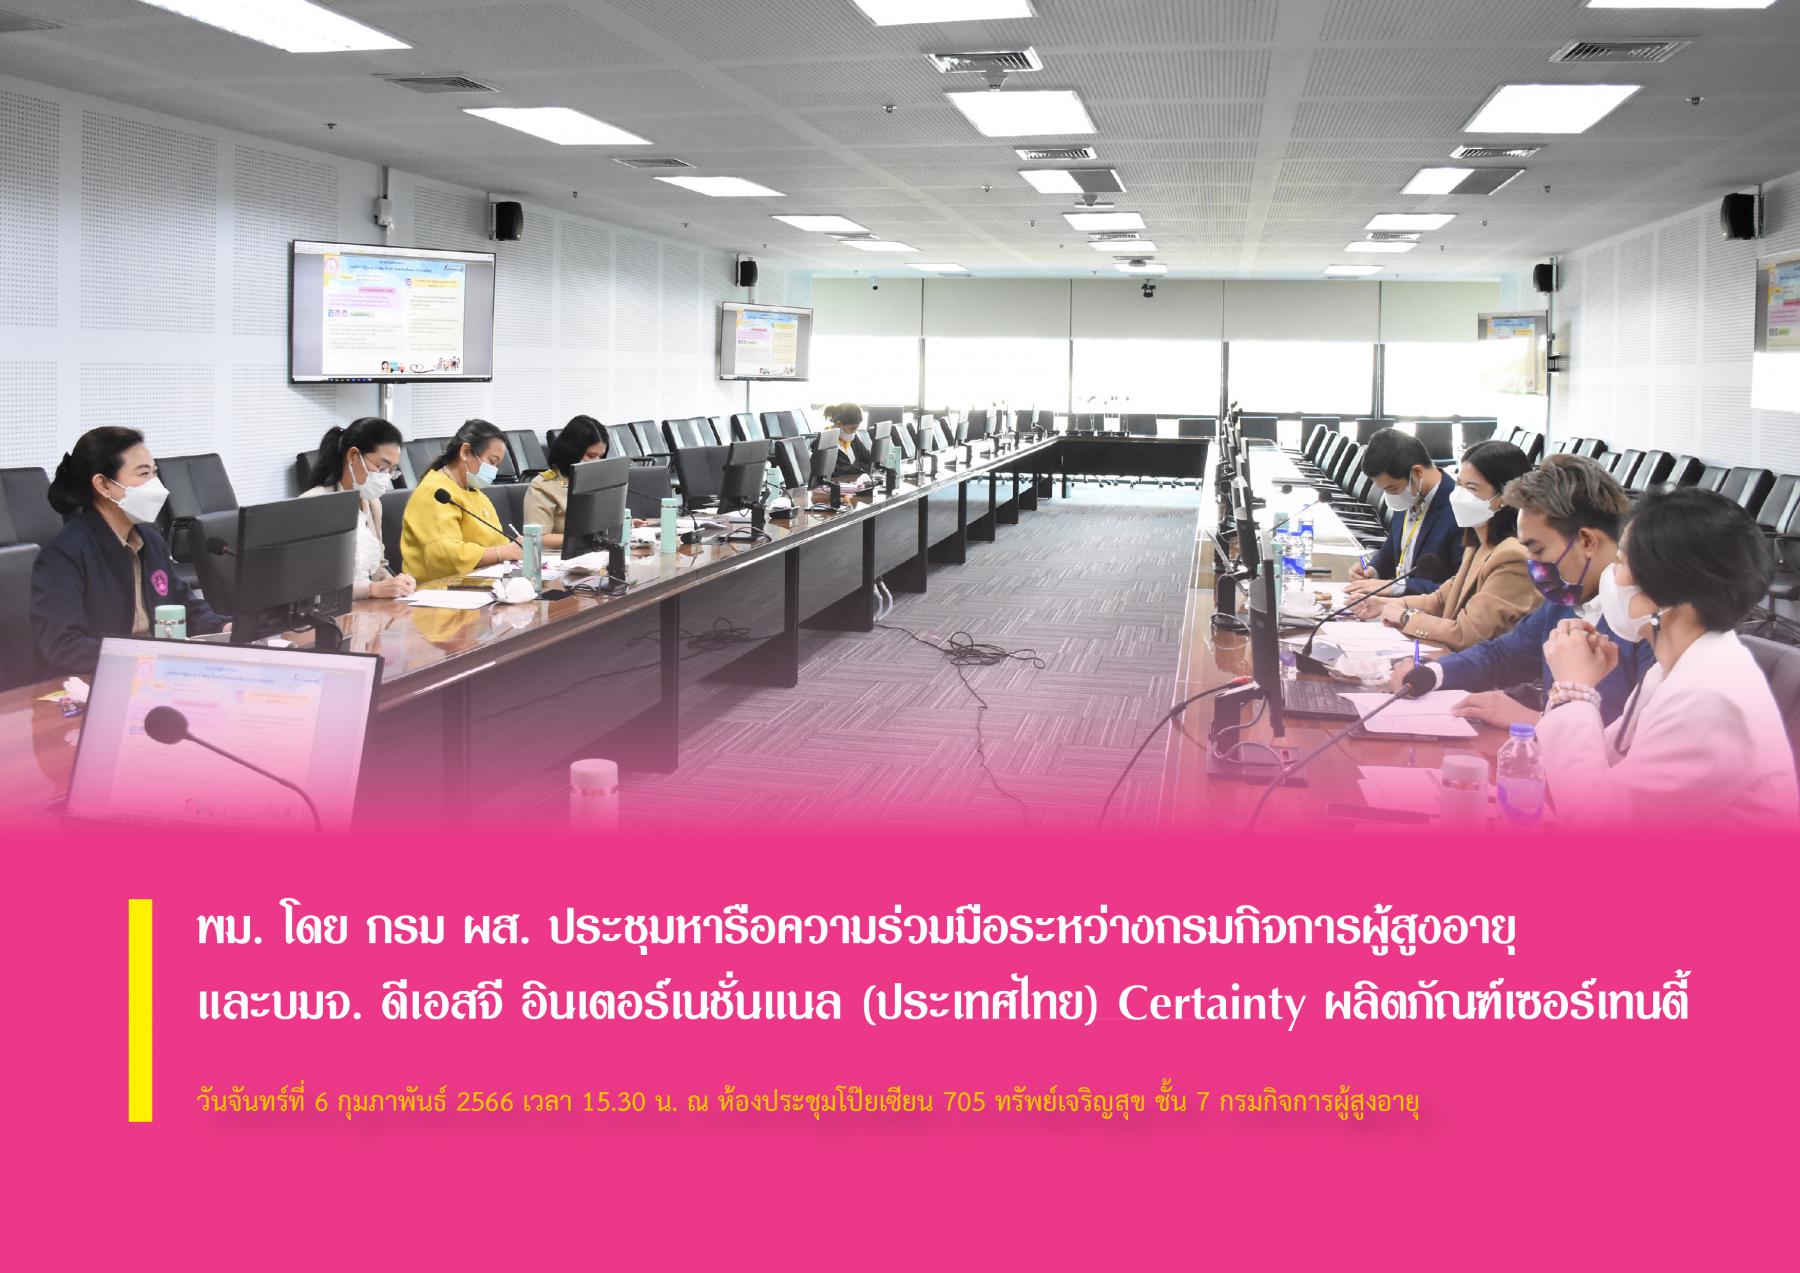 พม. โดย กรม ผส. ประชุมหารือความร่วมมือระหว่างกรมกิจการผู้สูงอายุ และบมจ. ดีเอสจี อินเตอร์เนชั่นแนล (ประเทศไทย) Certainty ผลิตภัณฑ์เซอร์เทนตี้